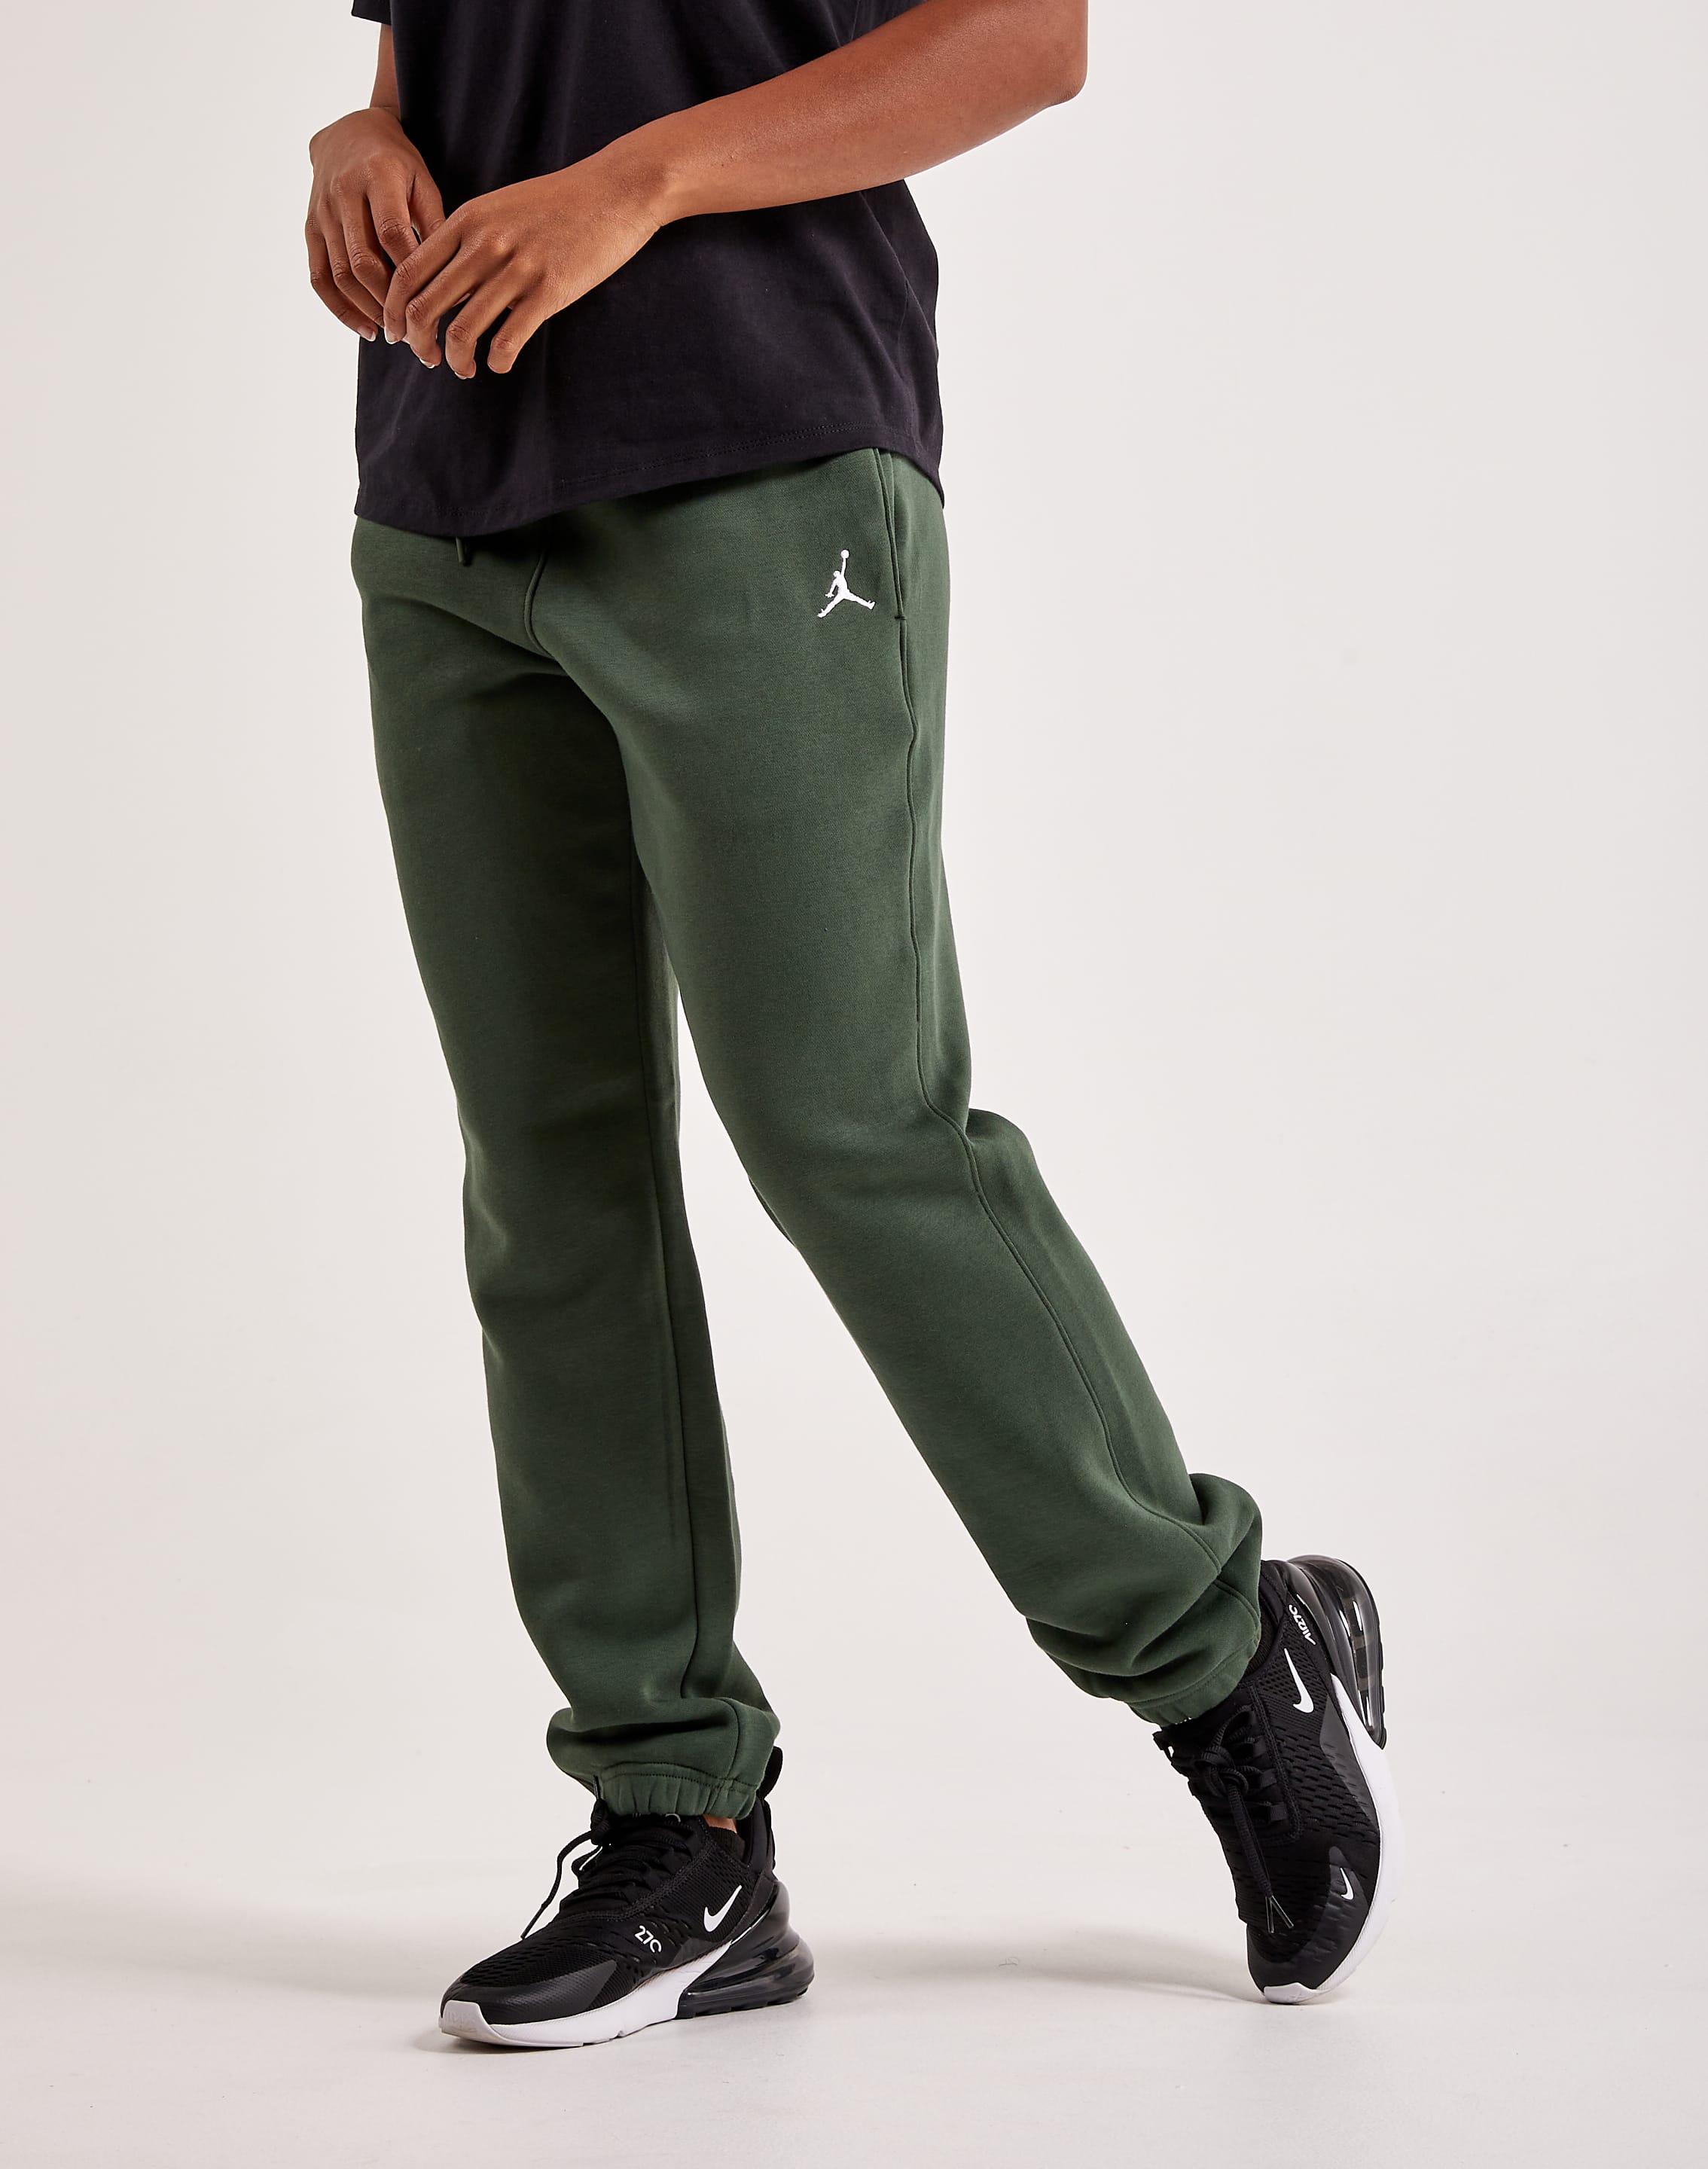 Nike Jordan Brooklyn fleece sweatpants in navy